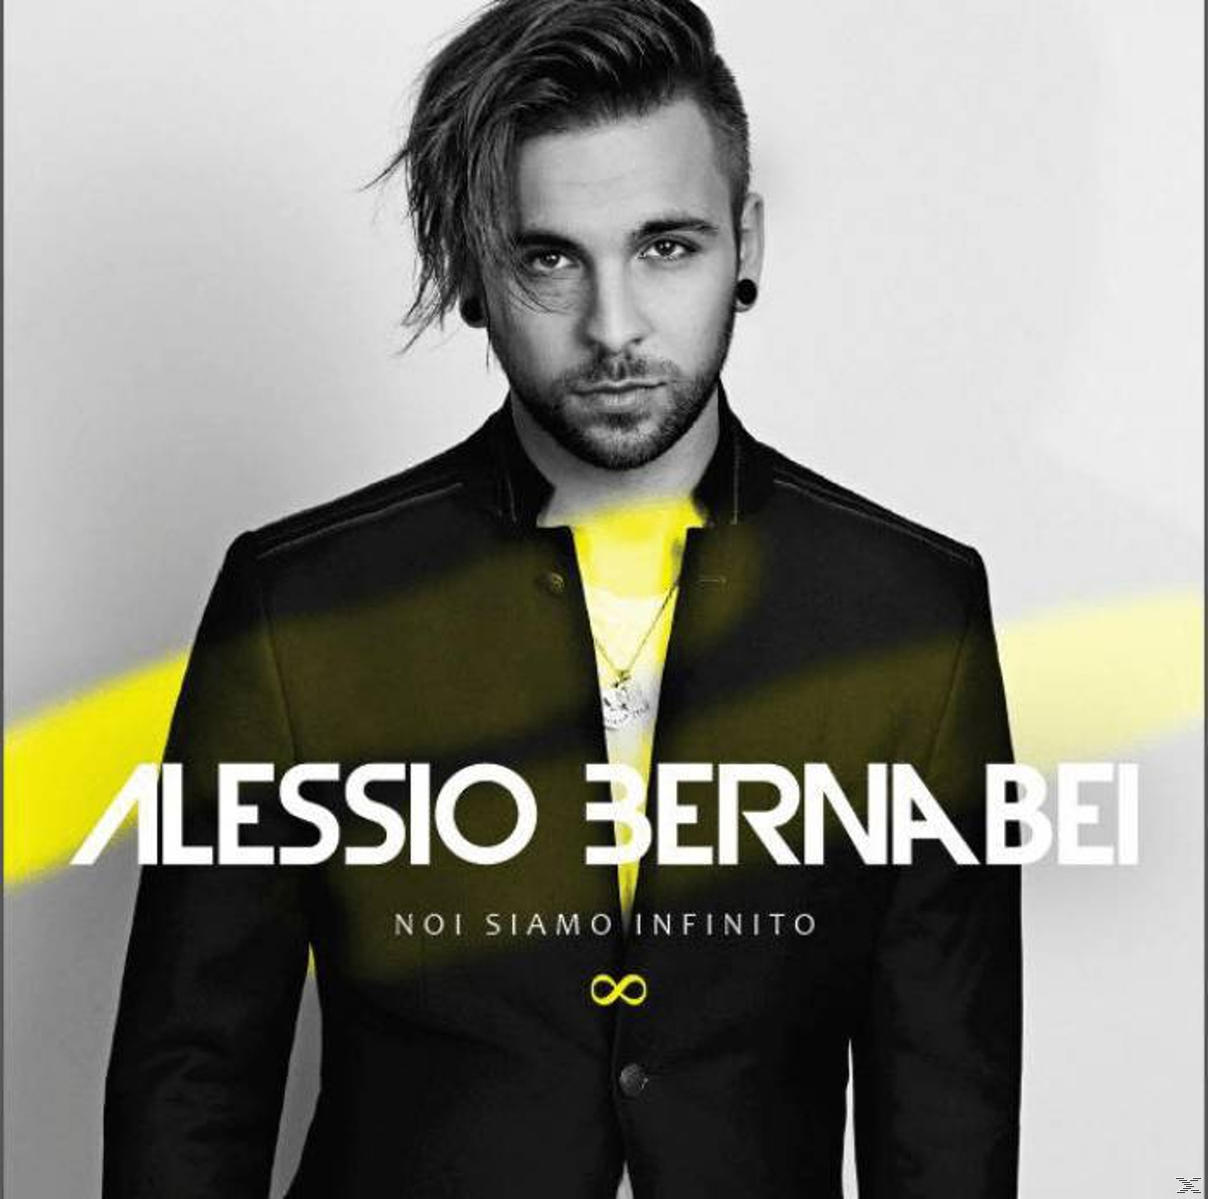 Alessio (CD) - Infinito Siamo Bernabei - Noi